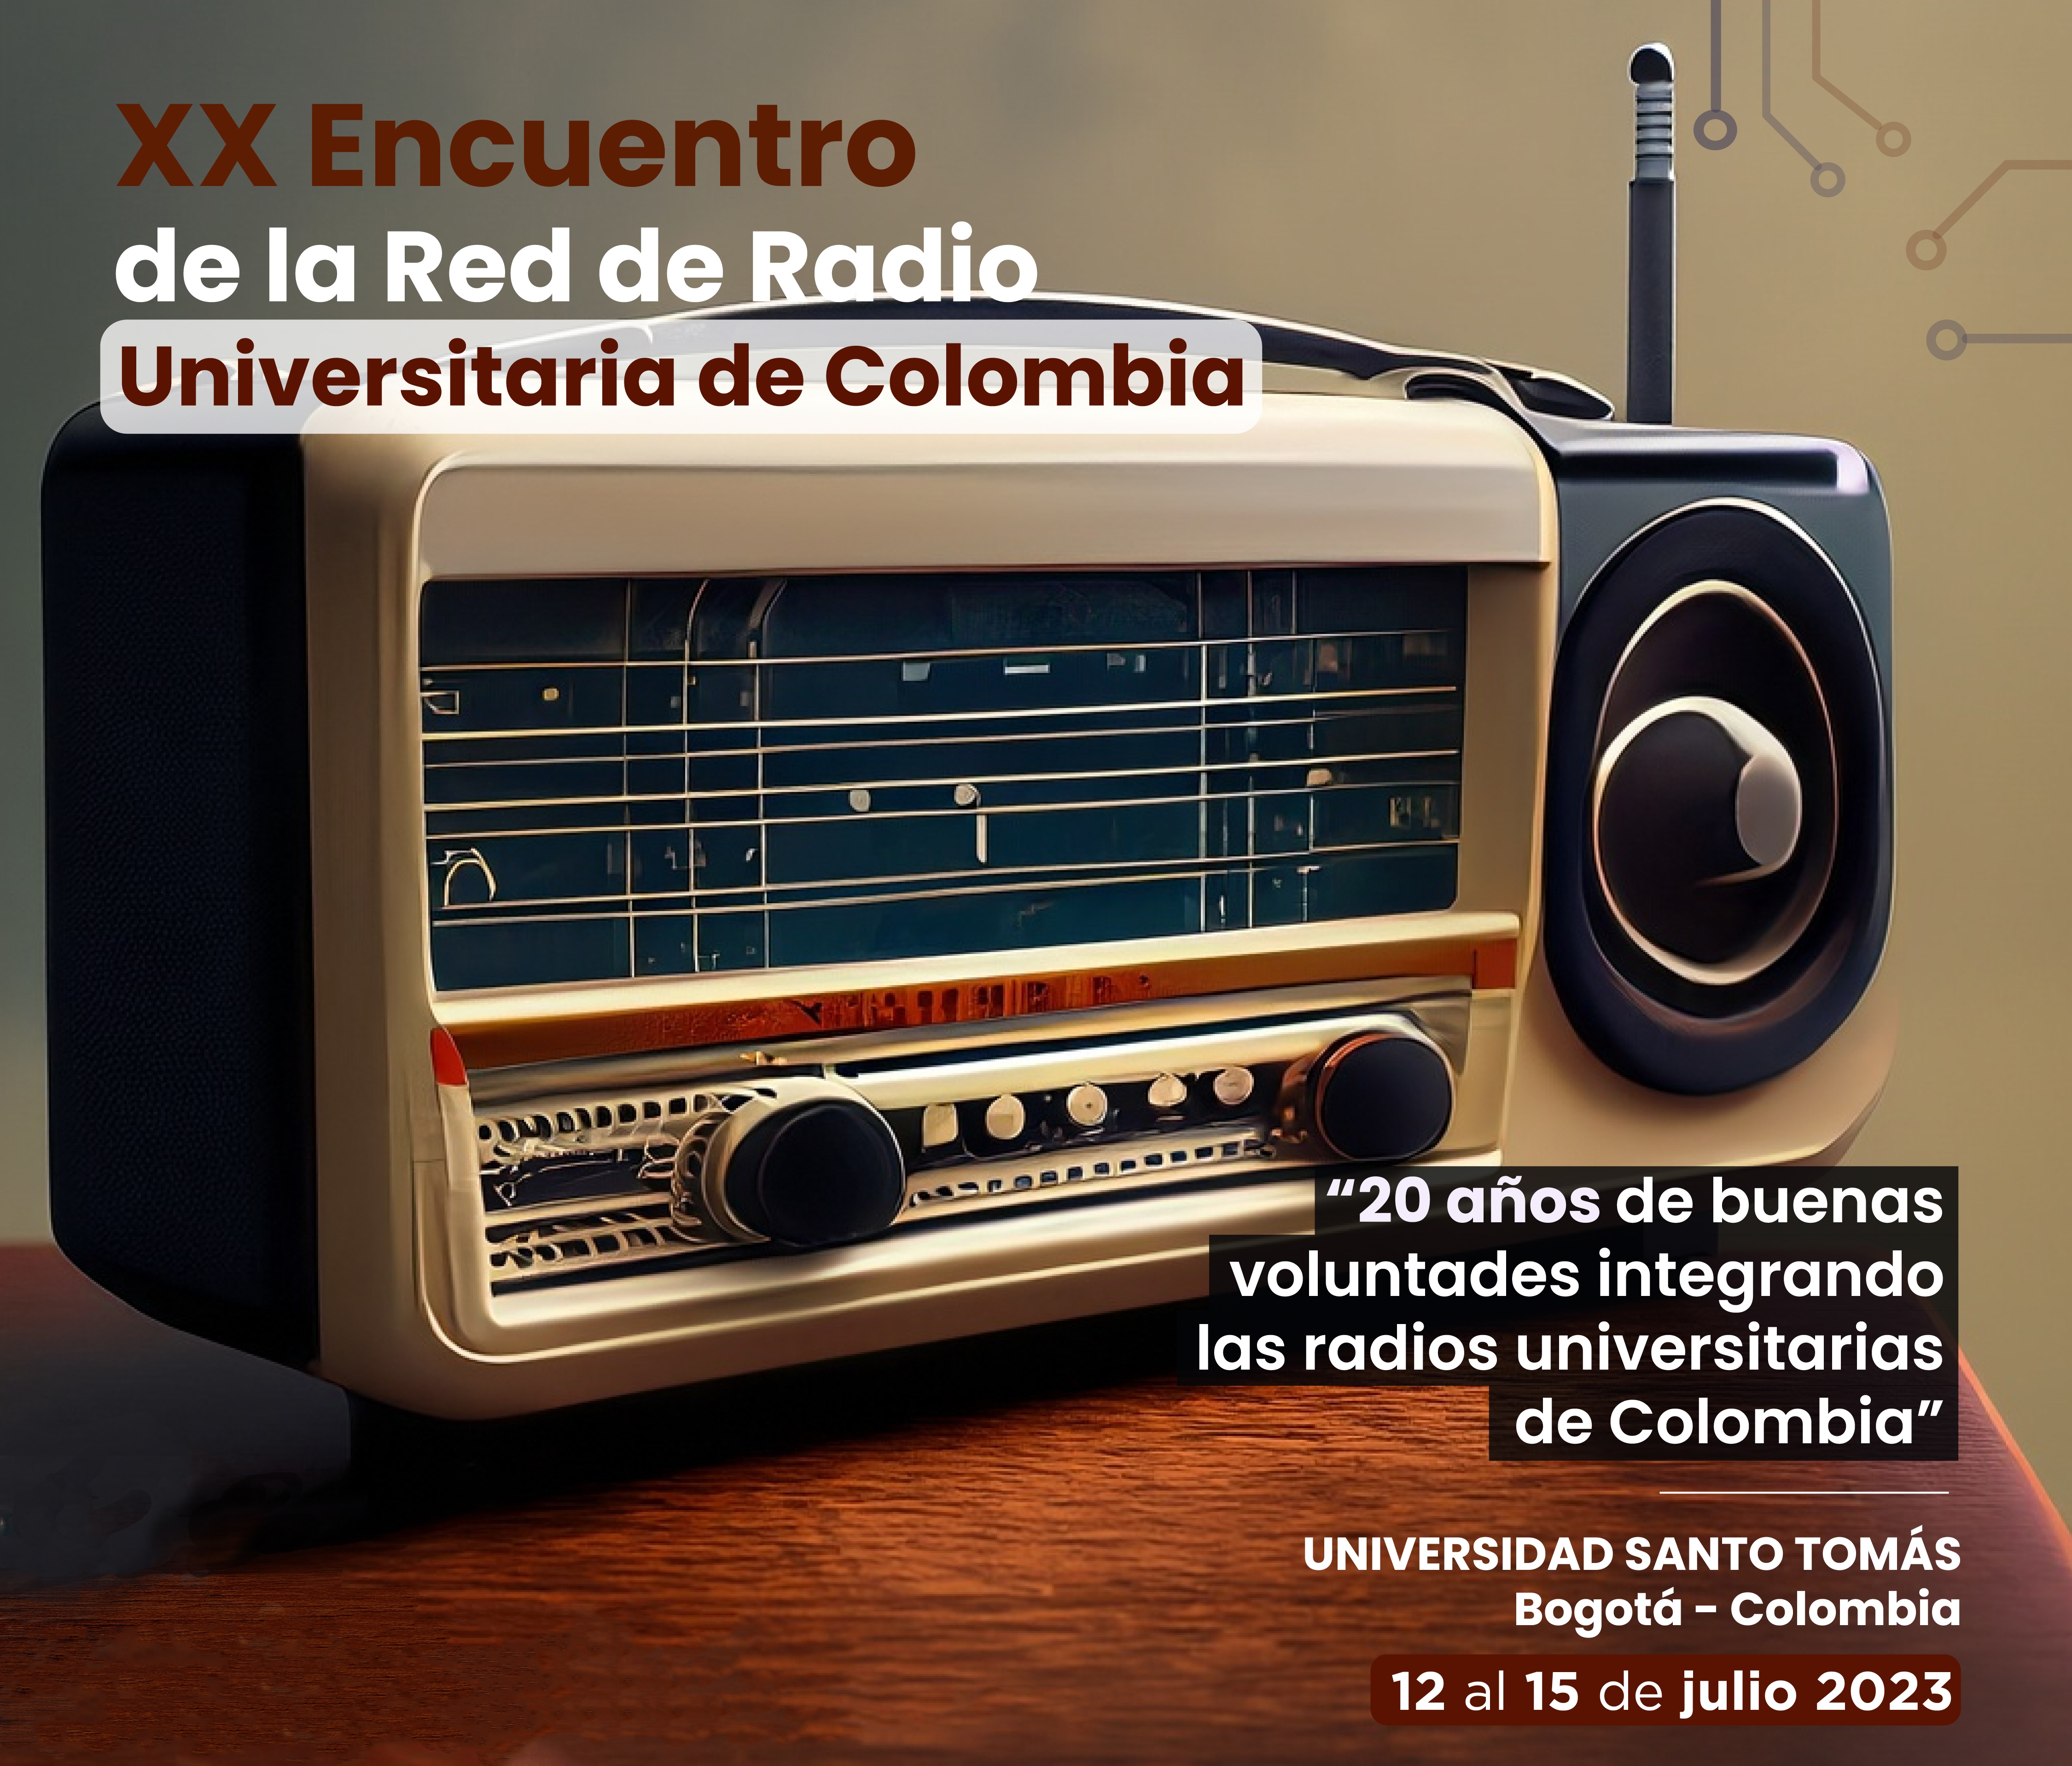 Imagen noticia XX Encuentro de la Red de Radio Universitaria de Colombia